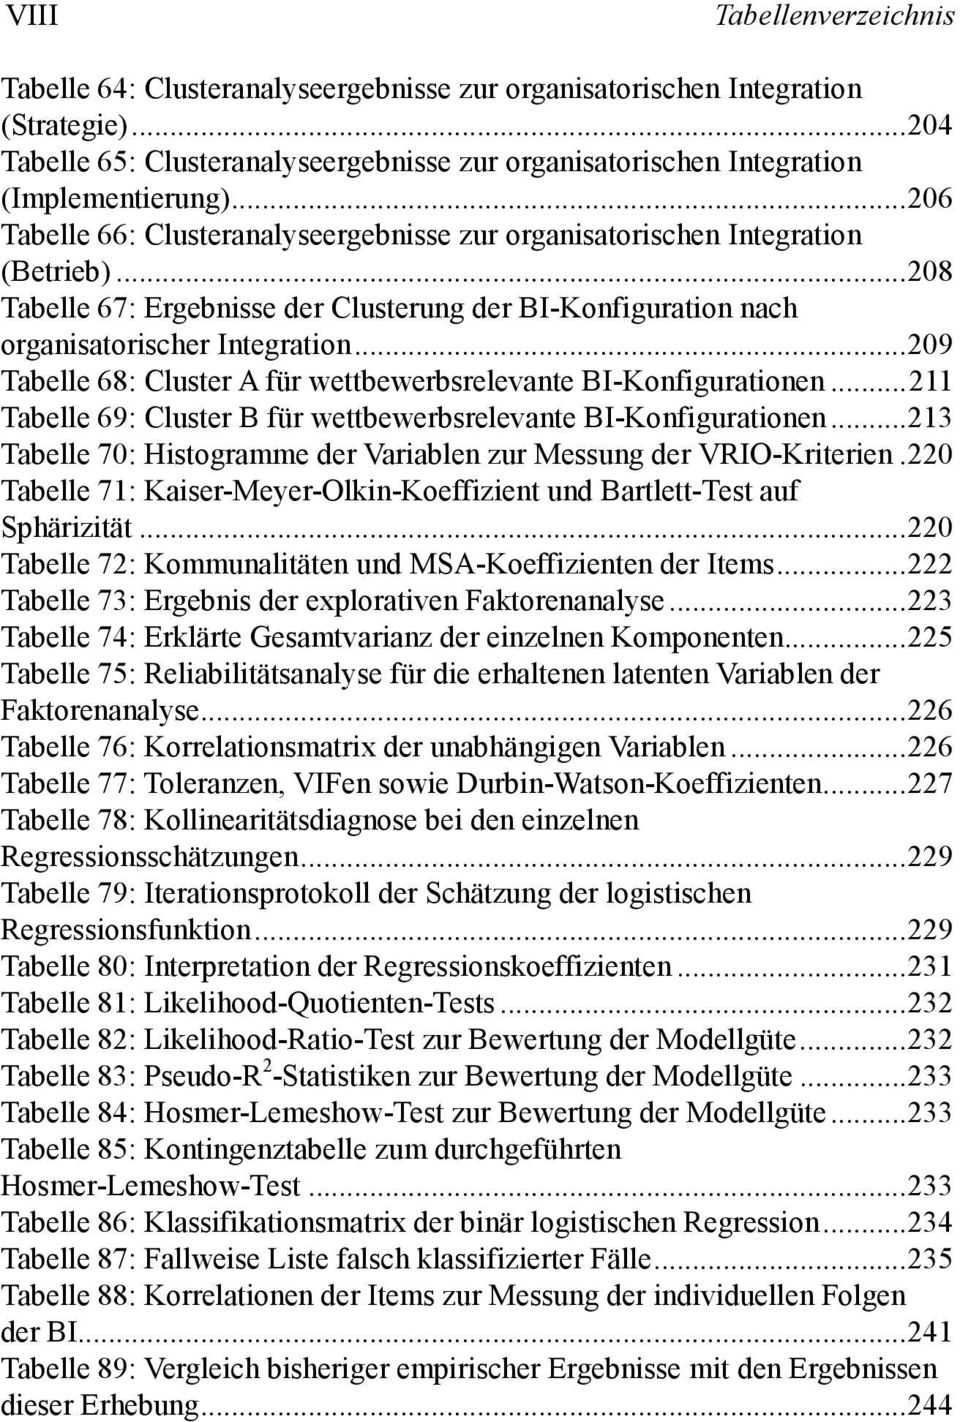 ..208 Tabelle 67: Ergebnisse der Clusterung der BI-Konfiguration nach organisatorischer Integration...209 Tabelle 68: Cluster A für wettbewerbsrelevante BI-Konfigurationen.